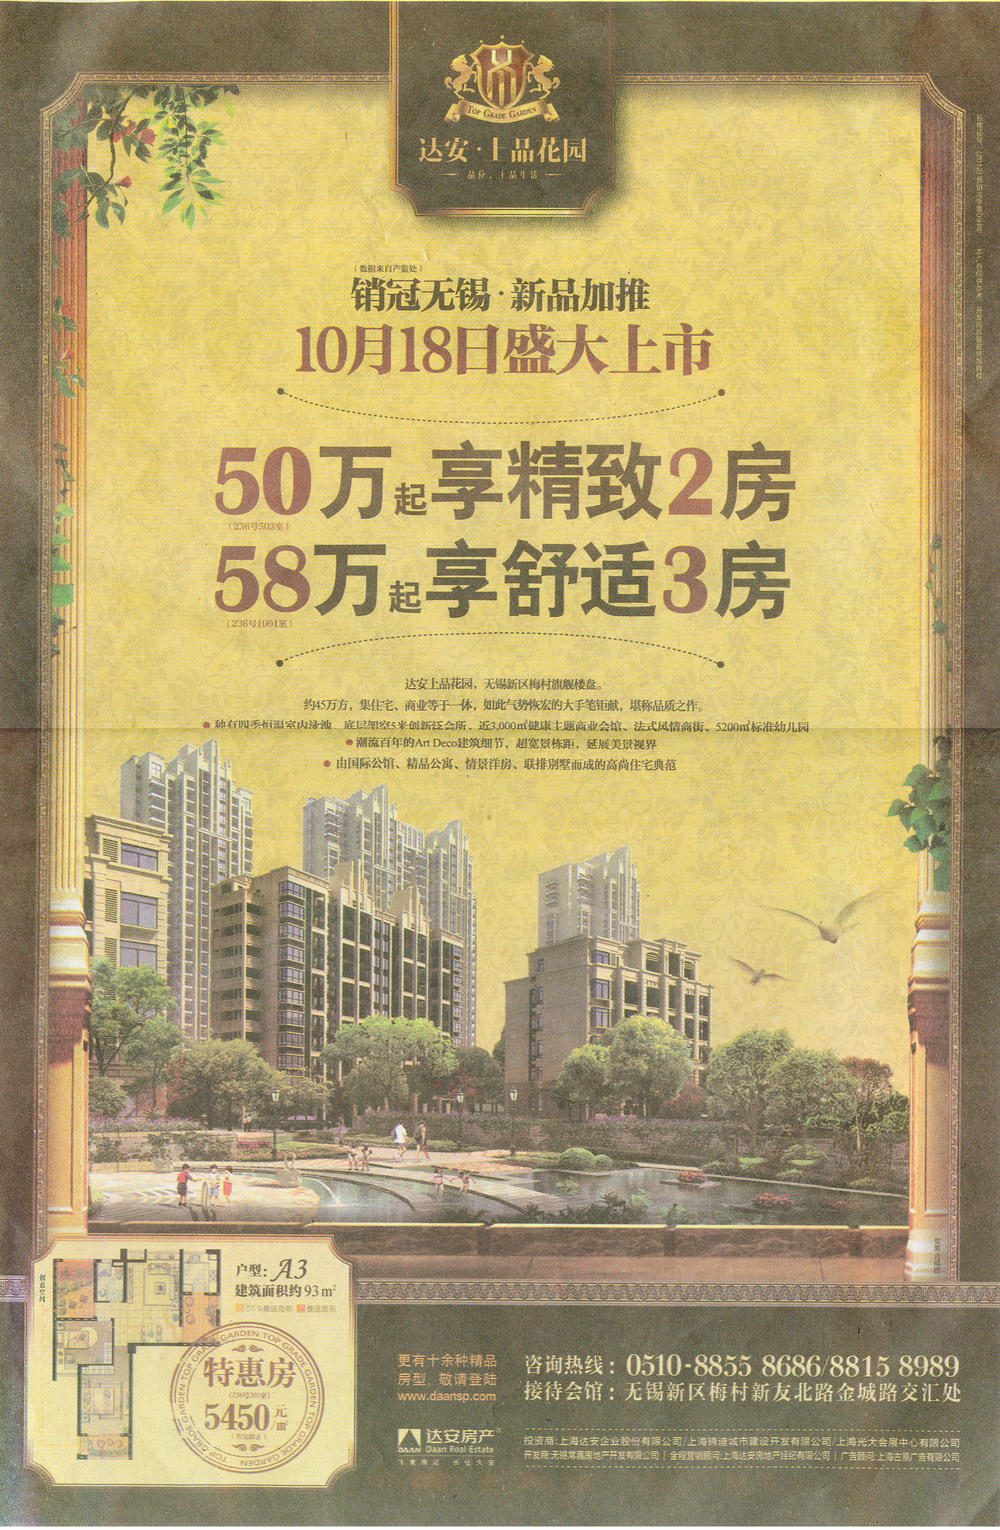 报纸广告 2012-10-16 现代快报 封10   